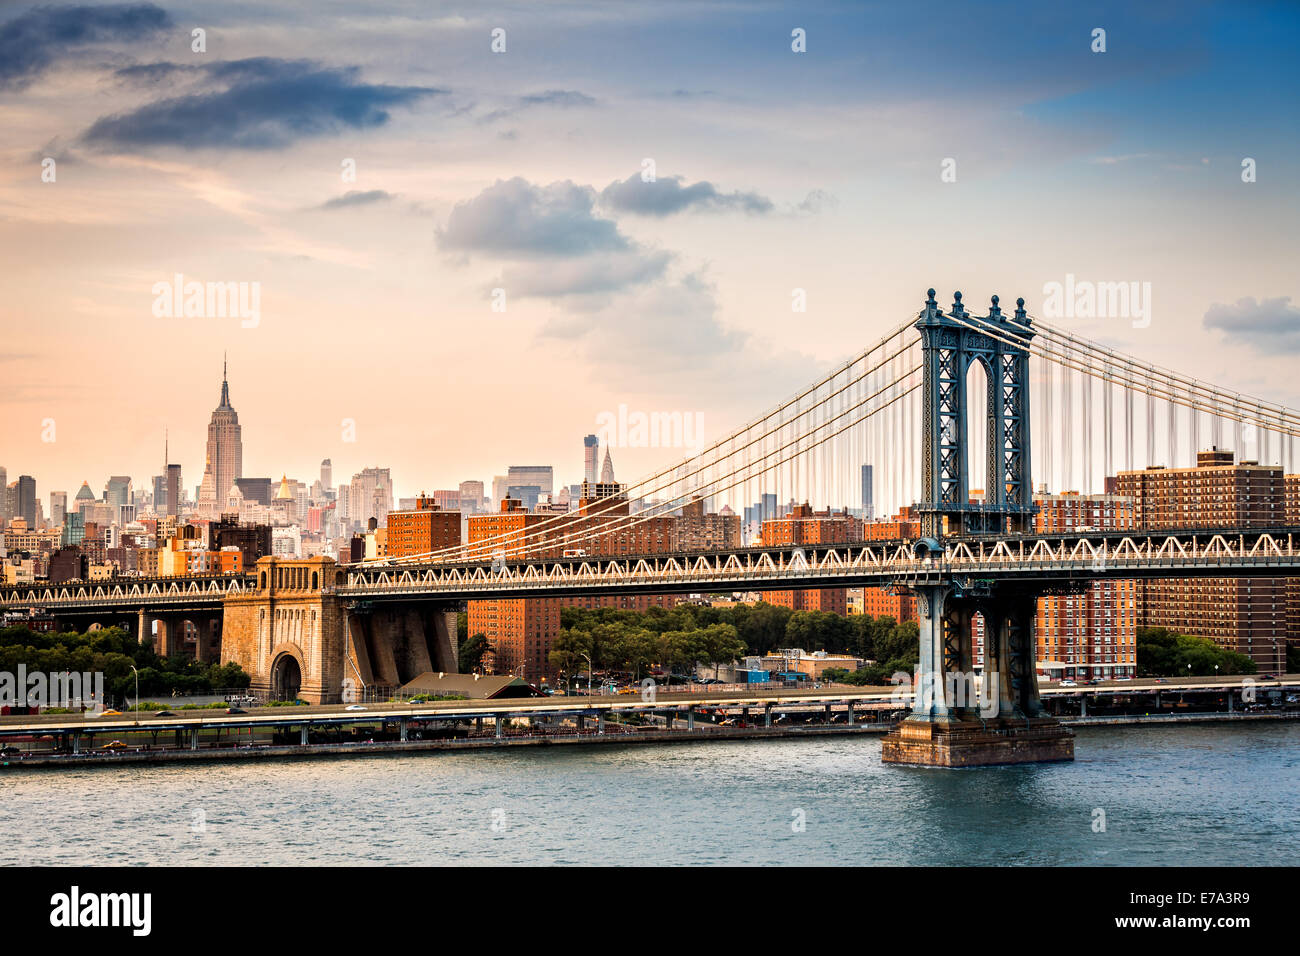 Manhattan Bridge and the New York skyline before sunset Stock Photo